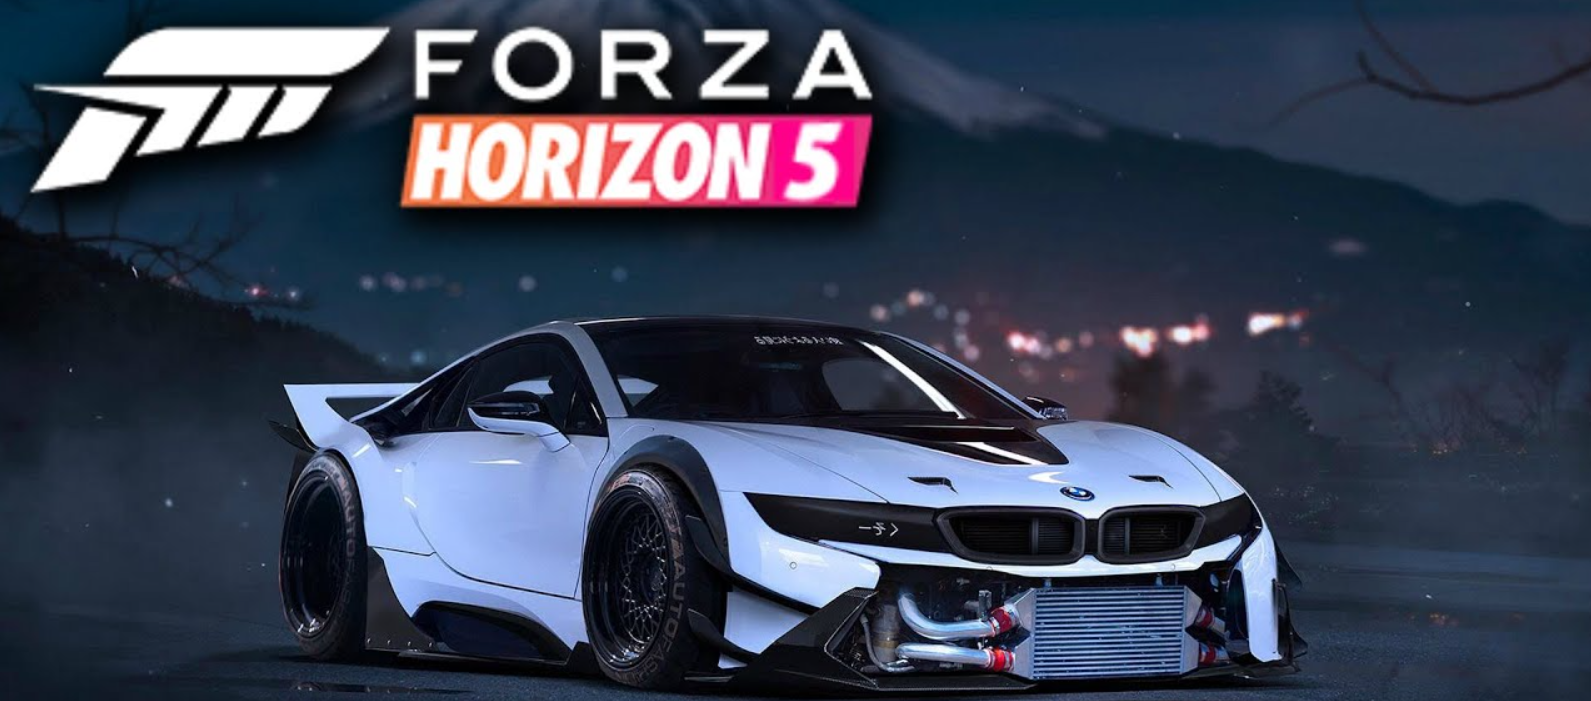 Forza horizon 5 series 5. Forza Horizon 5 Постер. Forza Horizon 5 обложка. Forza Horizon 5 Xbox. Forza Horizon 5 Premium.